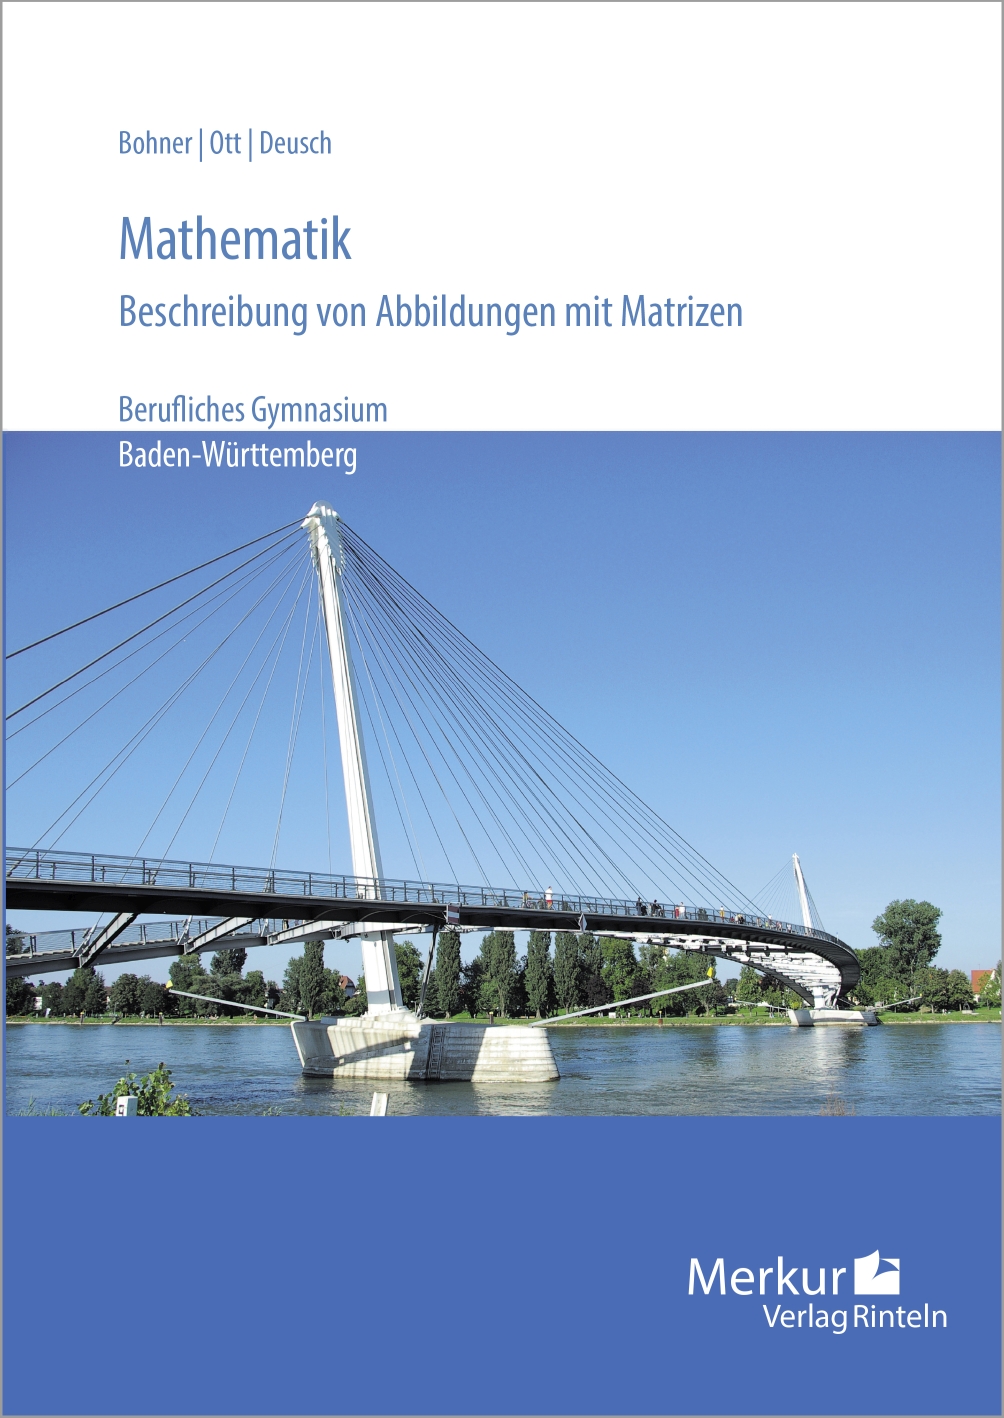 Mathematik - Beschreibung von Abbildungen mit Matrizen - Berufliches Gymnasium